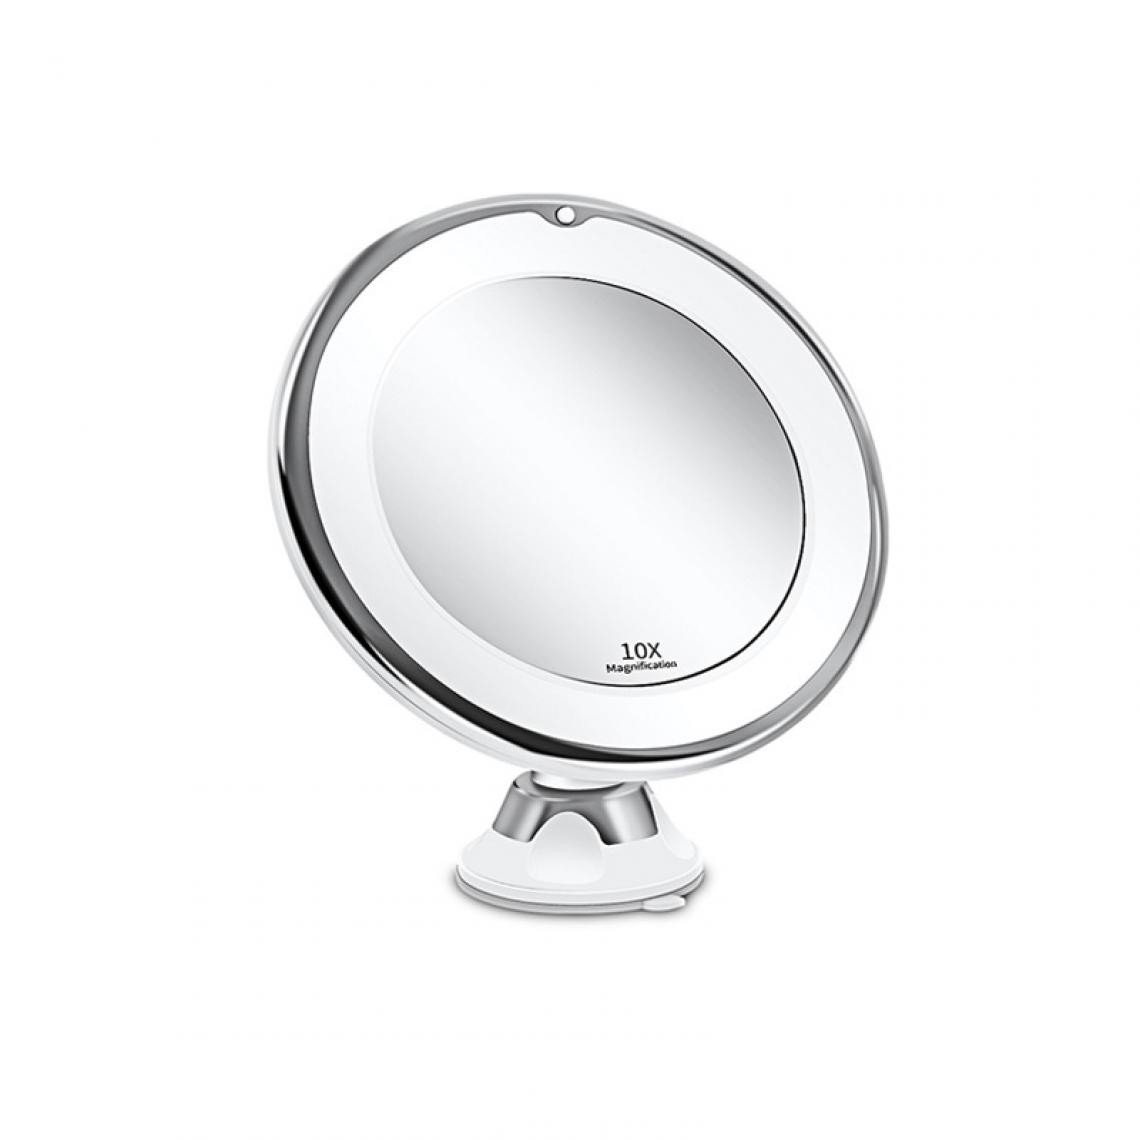 Universal - Miroir de salle de bain 10x commode de maquillage avec une lumière LED dans la salle de bains, main dans la main pour agrandir le maquillage miroir(Argent) - Miroir de salle de bain